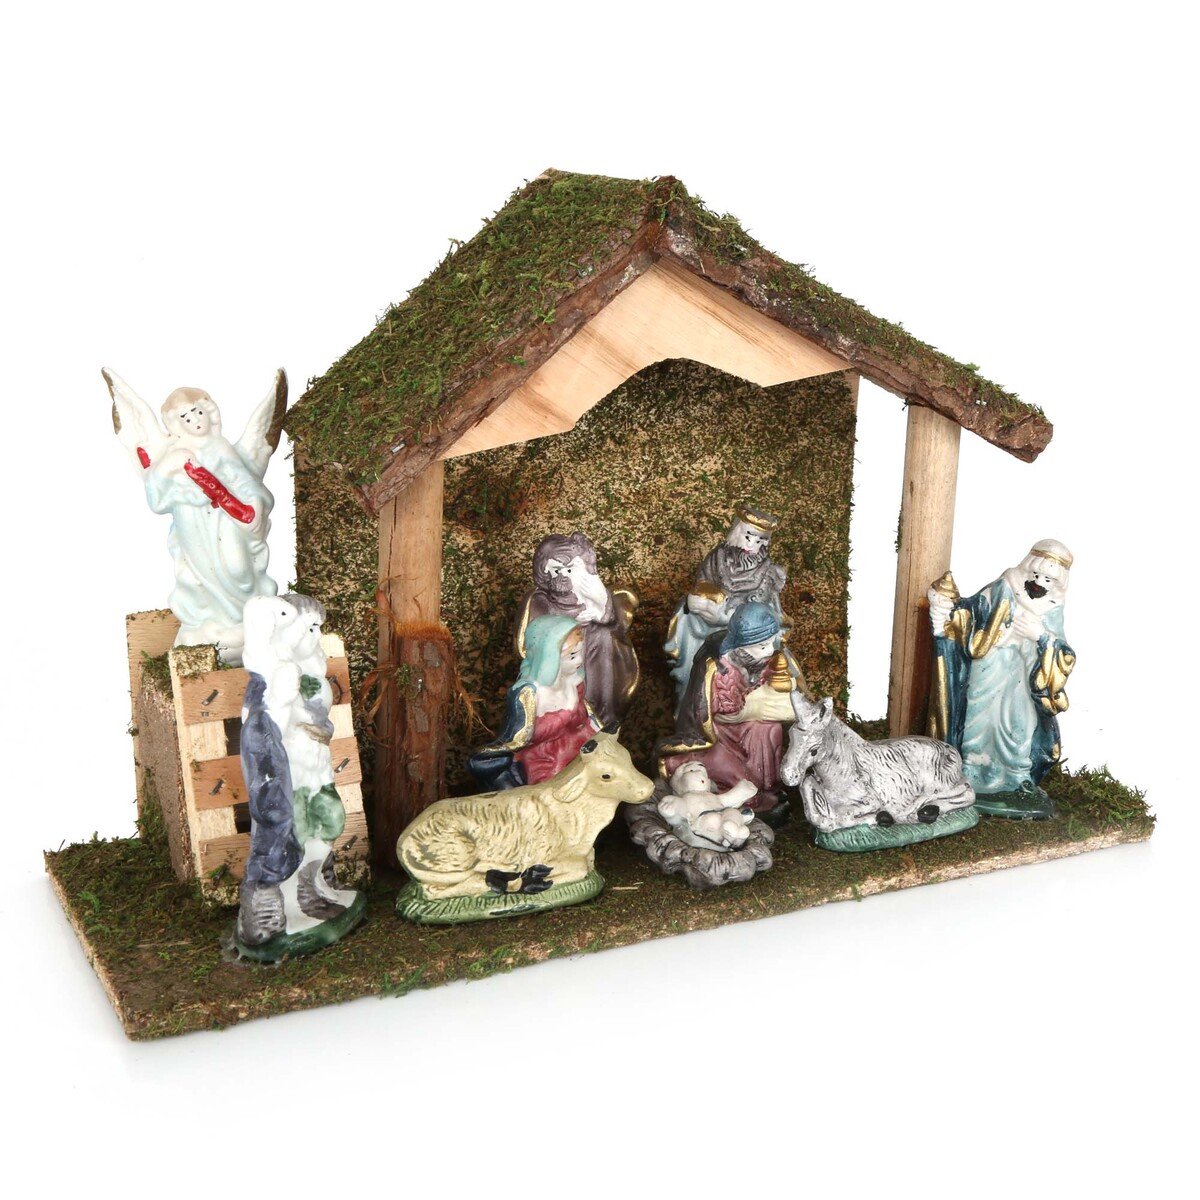 Chamadol Xmas Decoration, Christmas Nativity Set With Porcelain Figures 78073